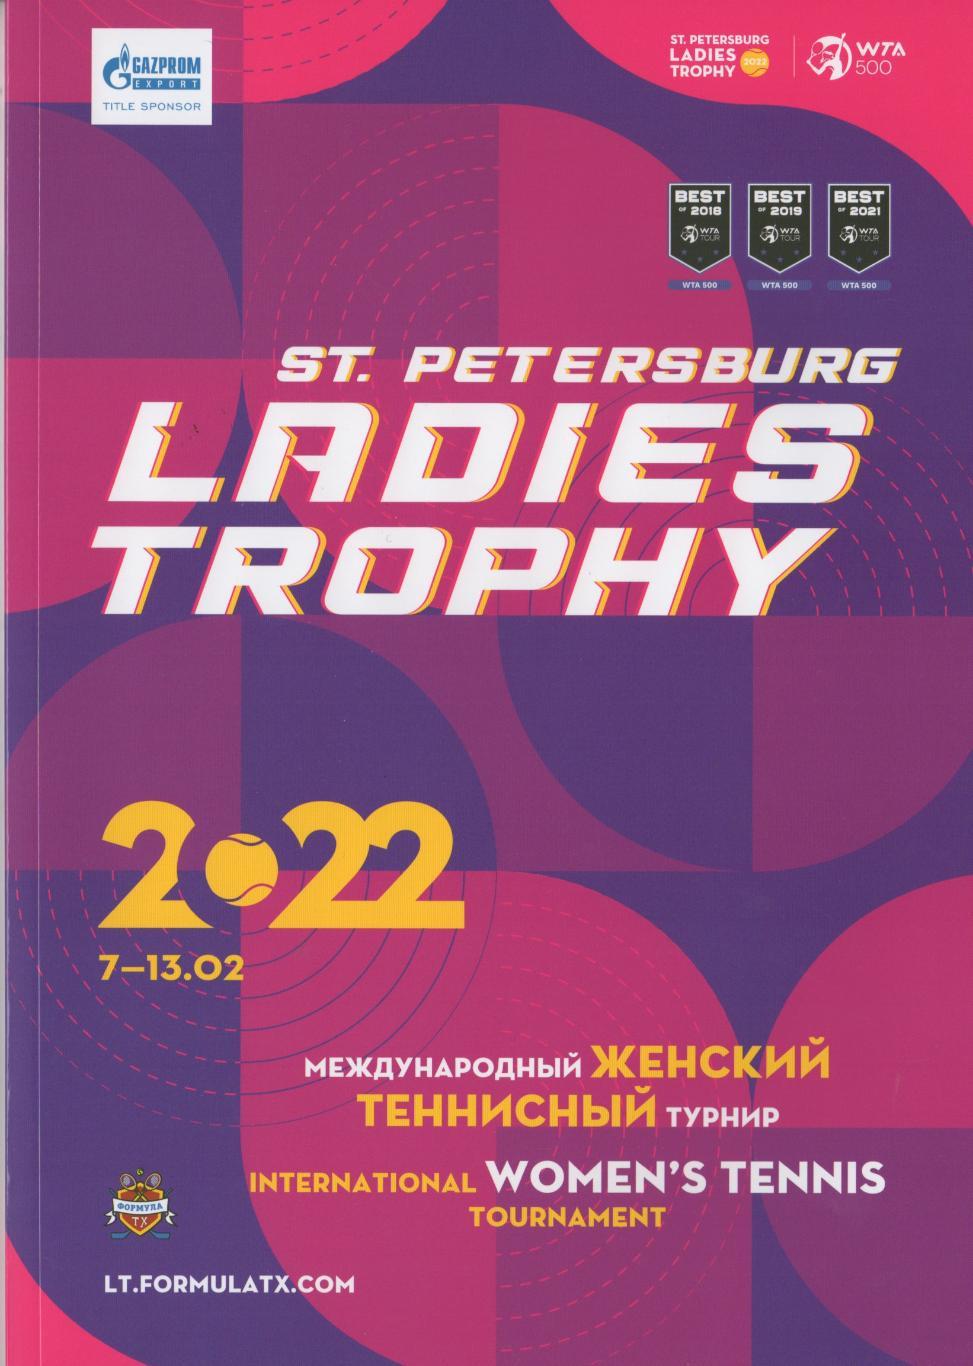 Фирм. полотенце и буклет с теннисного турнира ST.PETERSBURG LADIES TROPHY 2022